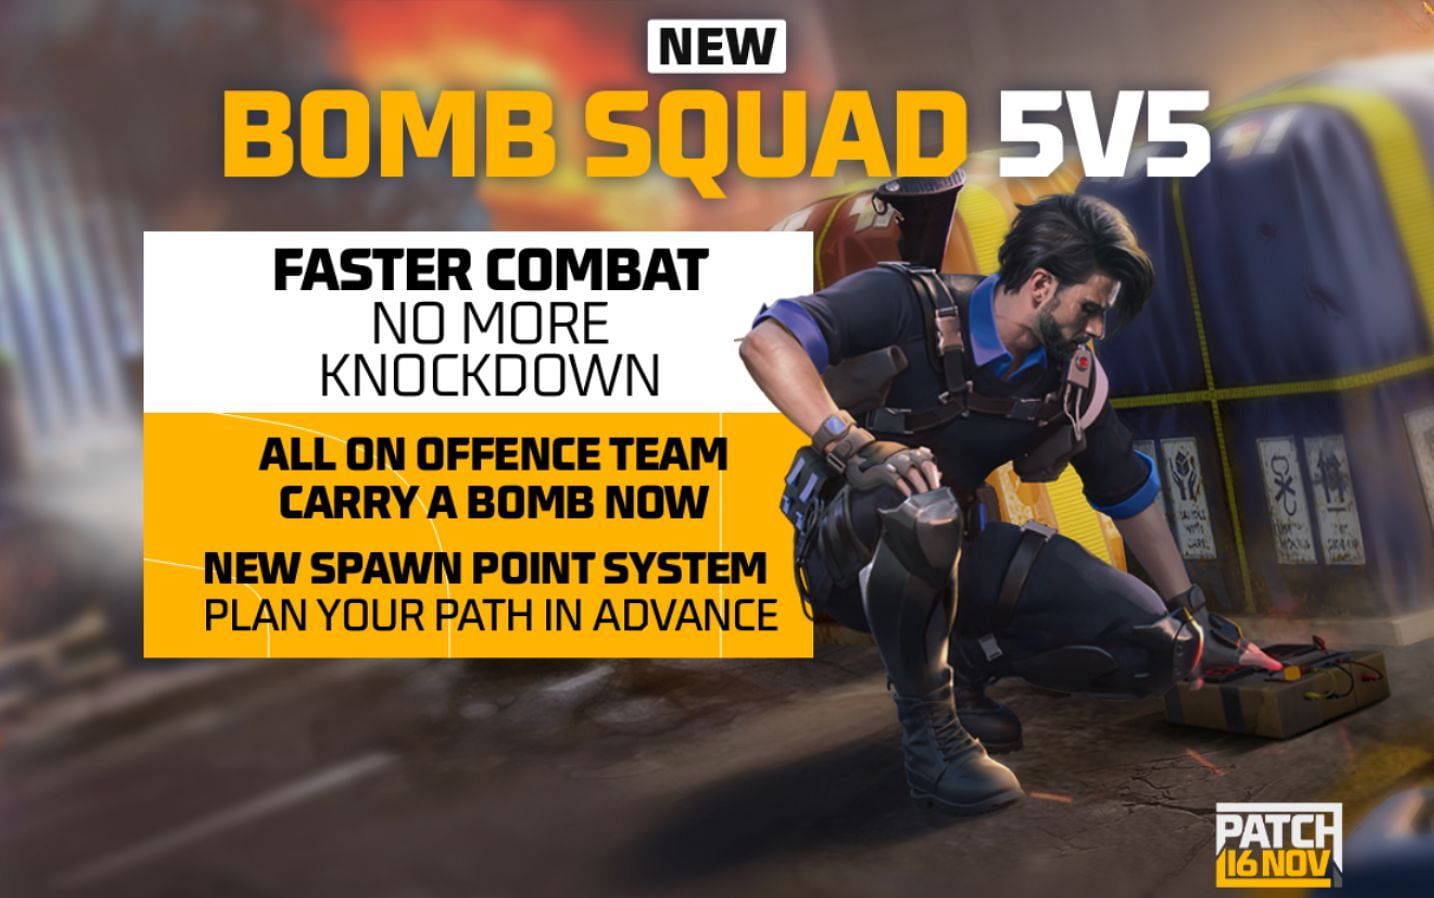 New Bomb Squad 5v5 (Image via Garena)